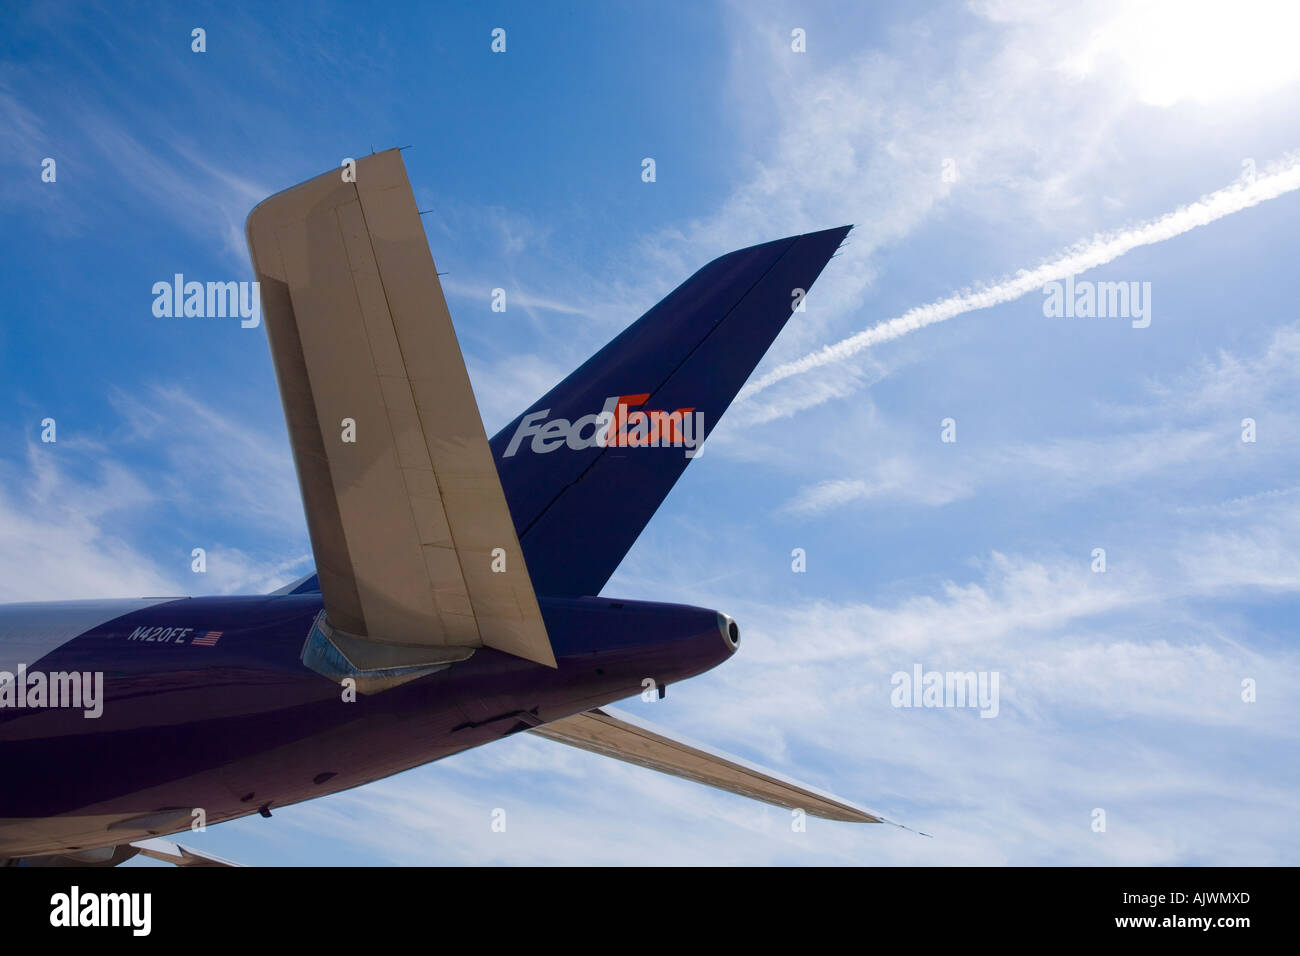 Fedex flugzeuge -Fotos und -Bildmaterial in hoher Auflösung – Alamy